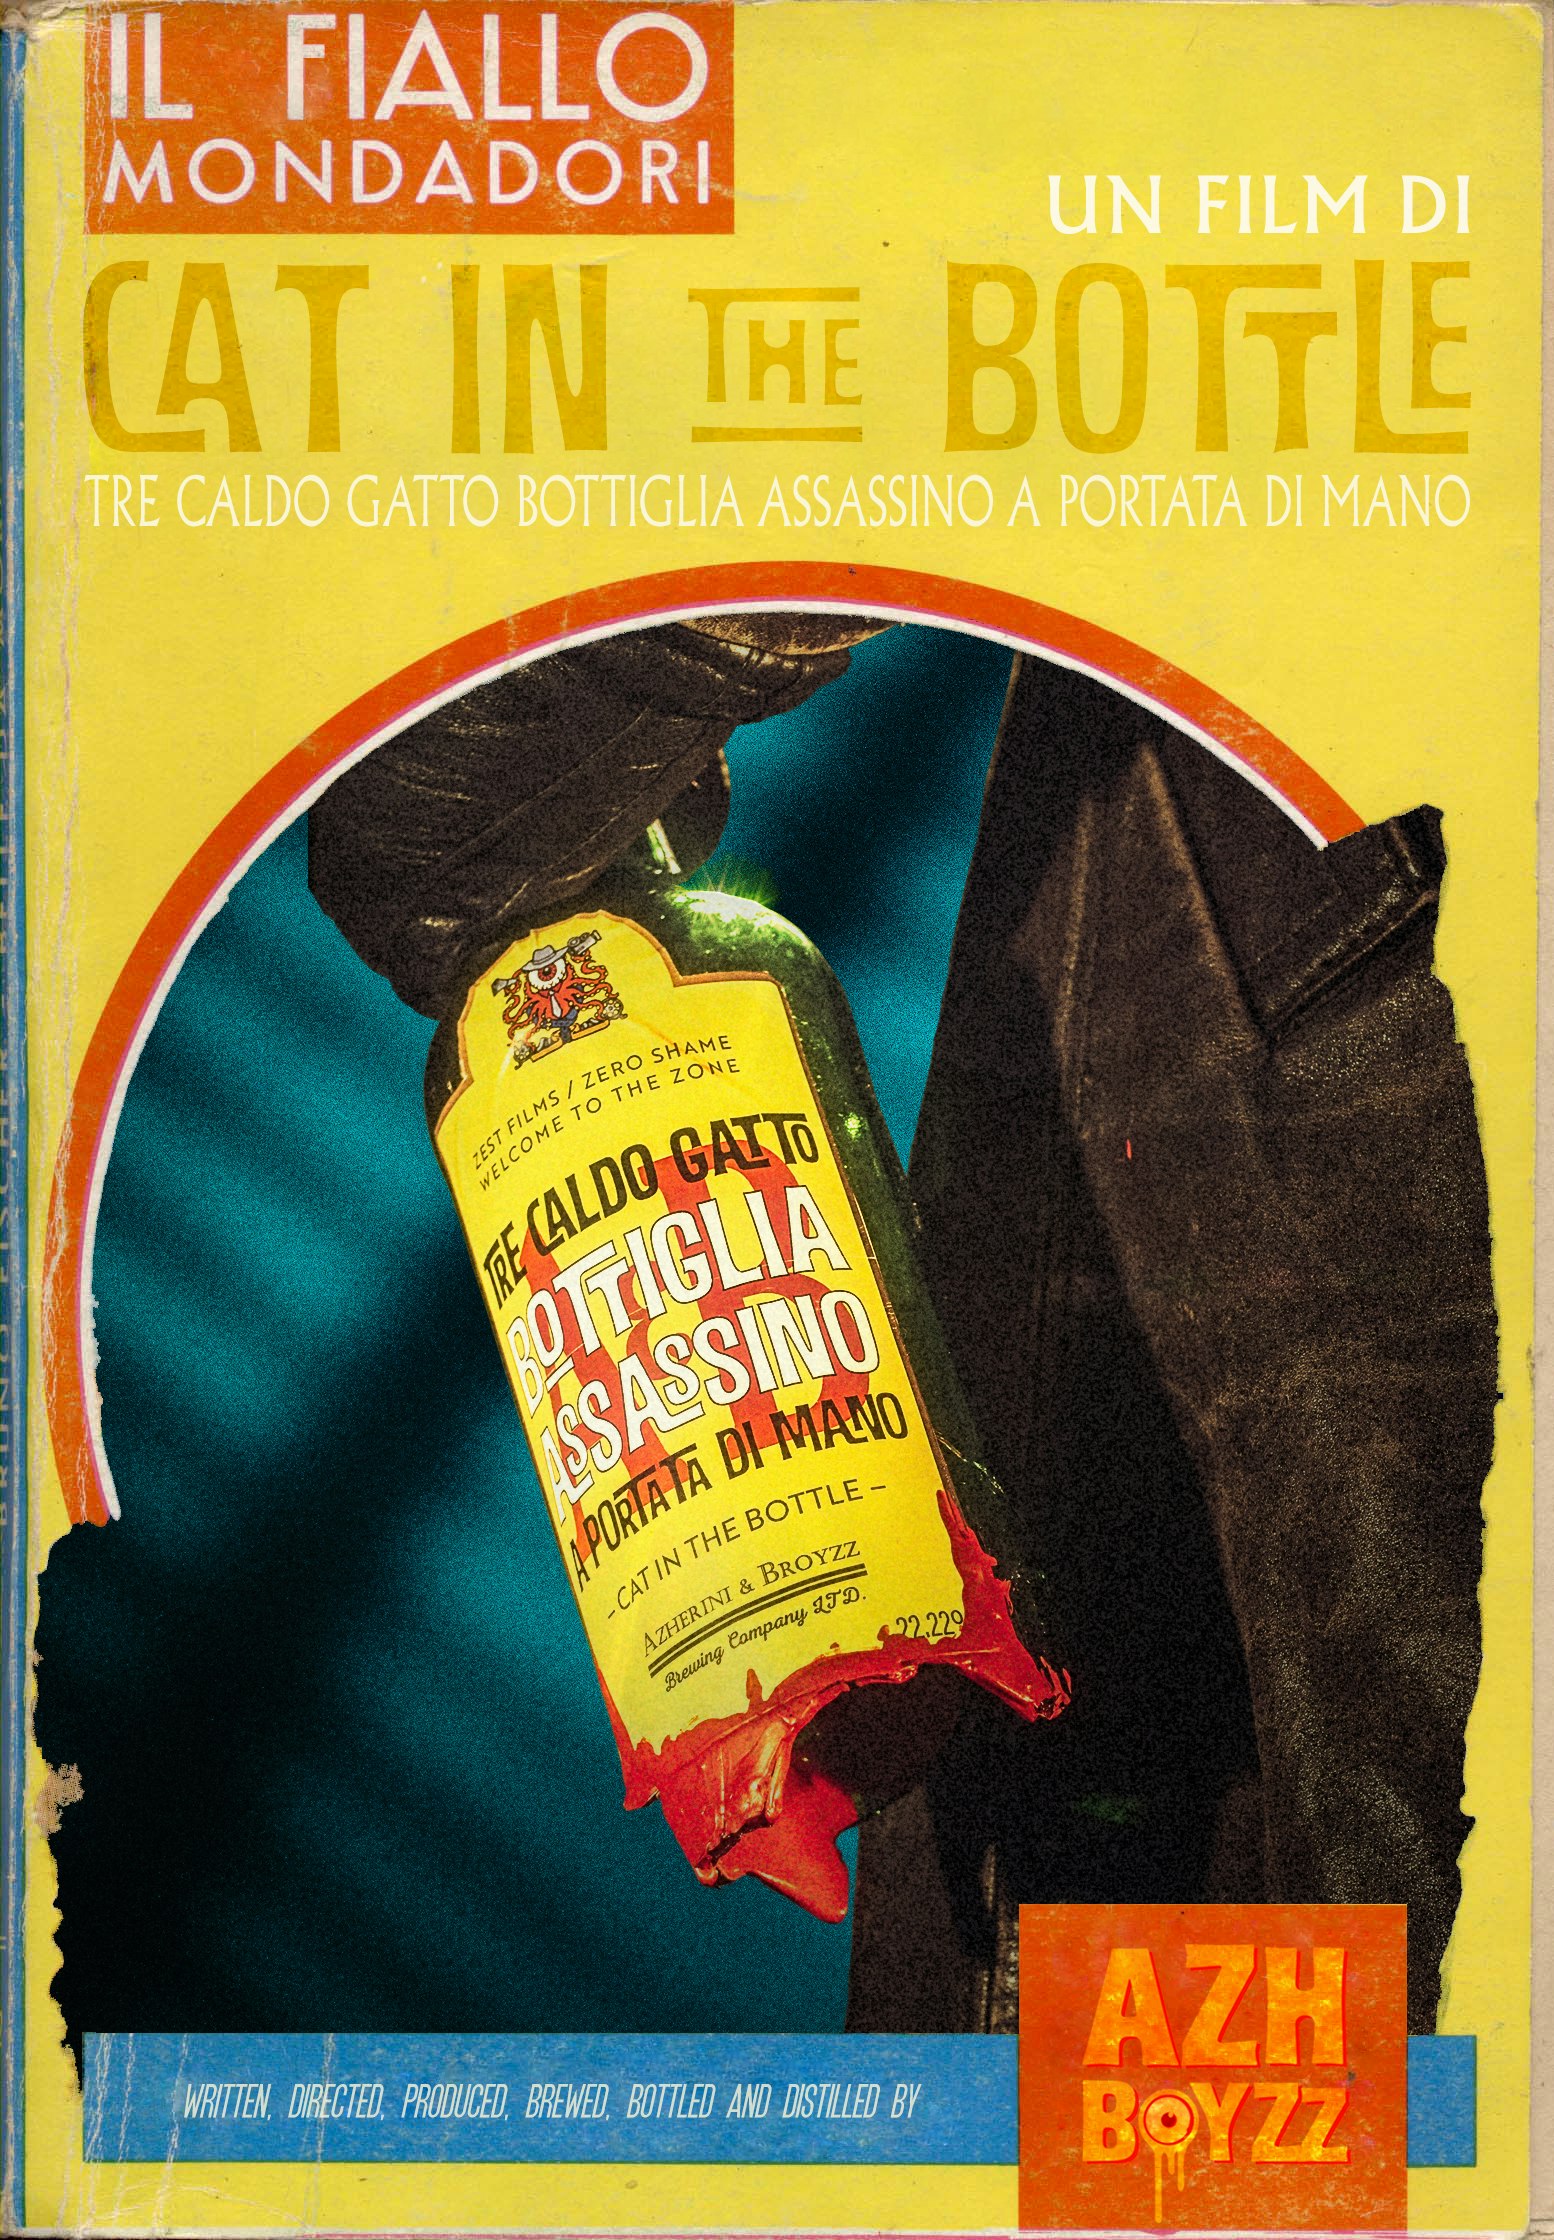 Cat in the Bottle - un-finished A&B film. Shot by Azh Boyzz.